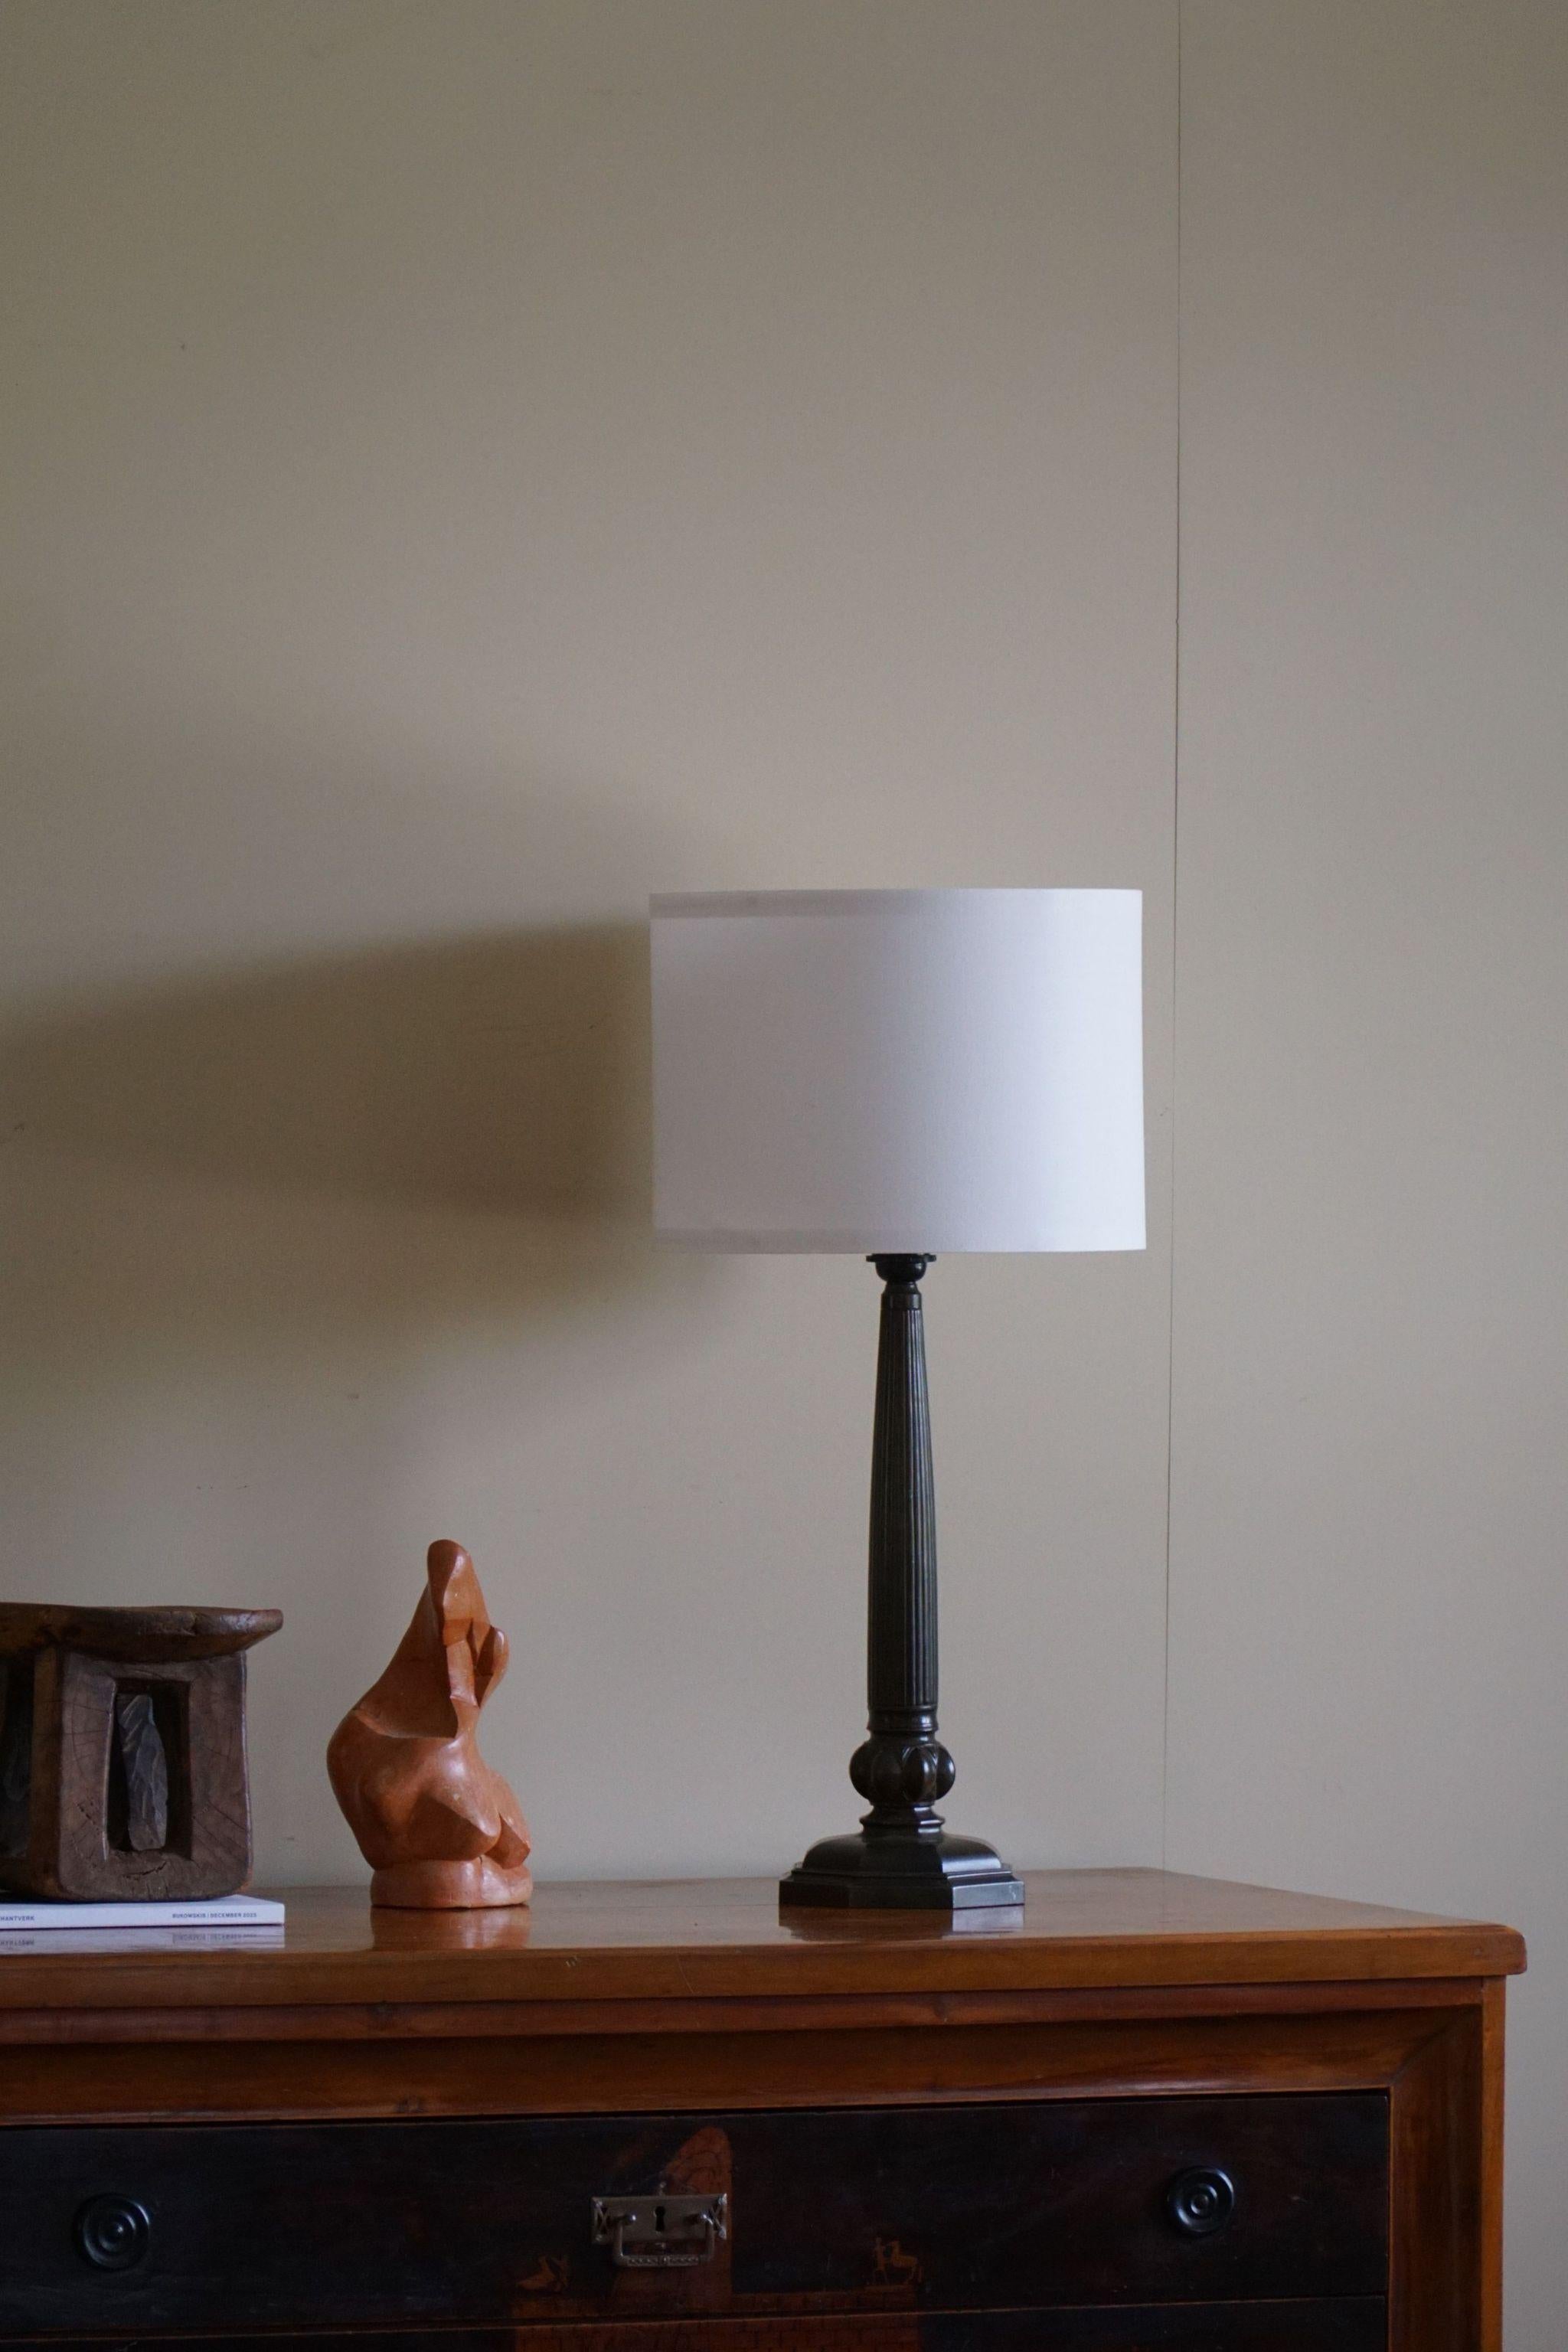 Pair of Danish Art Deco Table Lamps by Just Andersen in Diskometal 